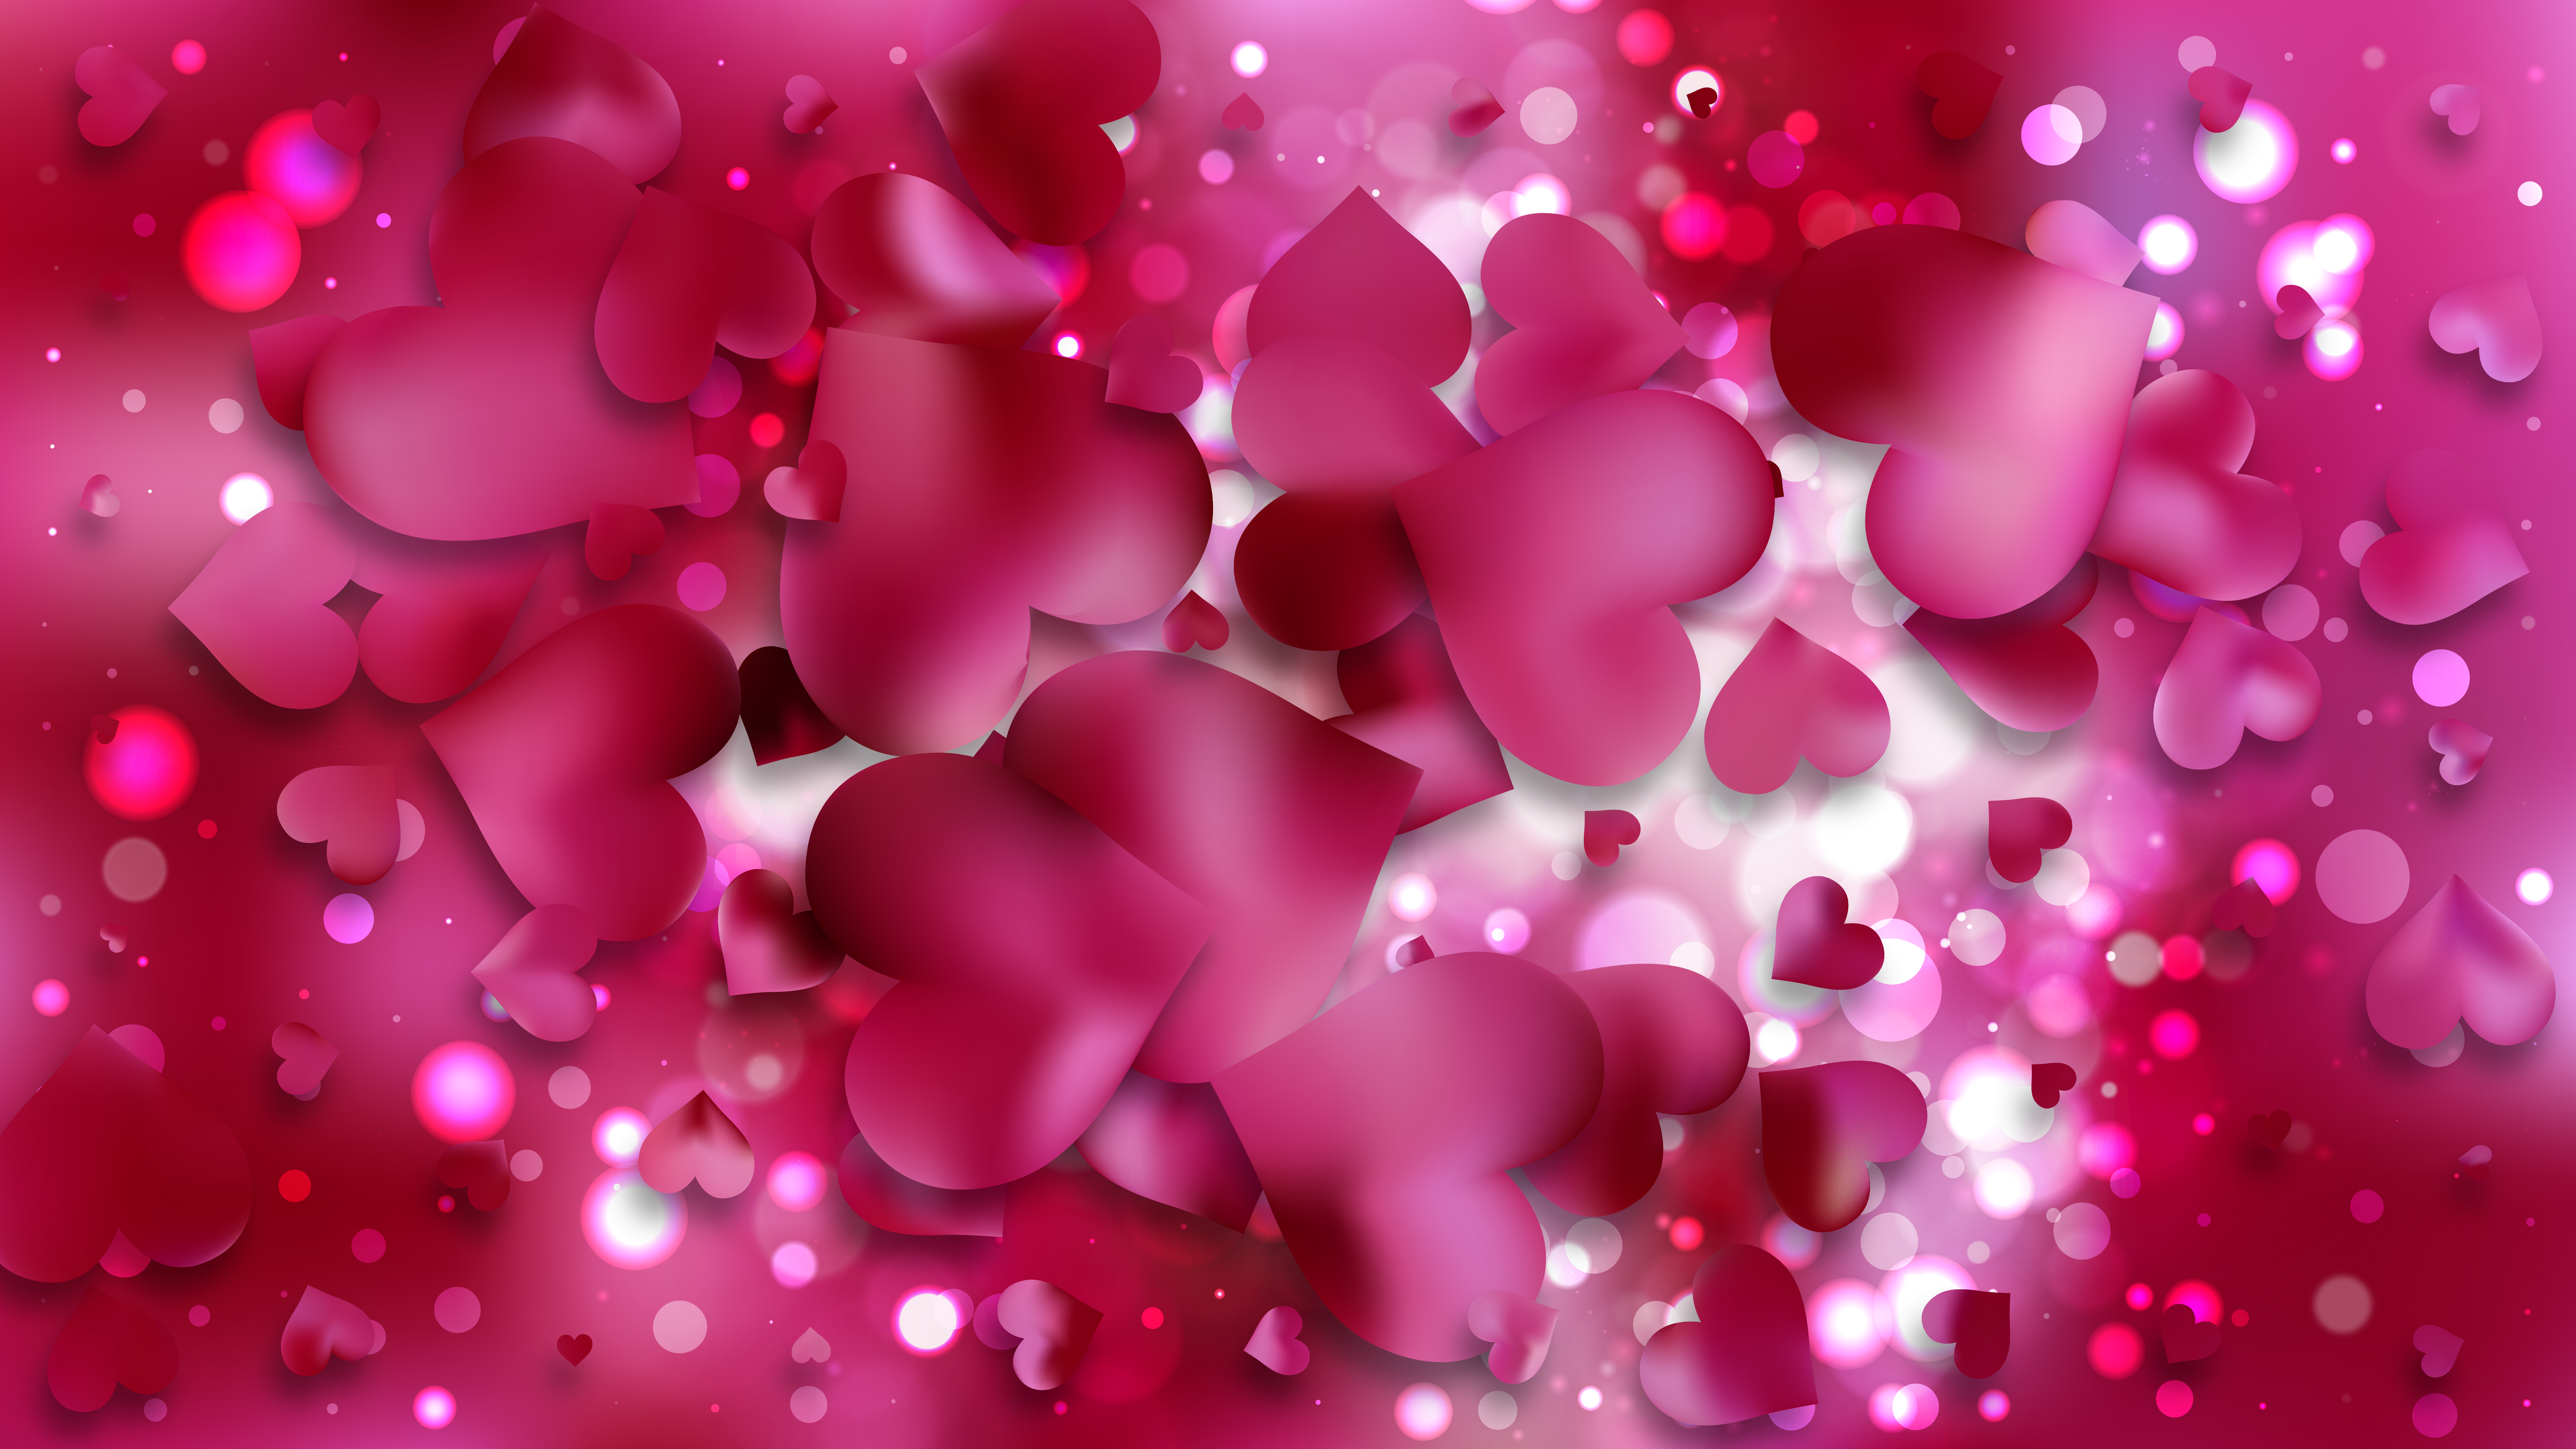 Pink Heart Wallpaper Background Vector Art - 8000x4500 Wallpaper 